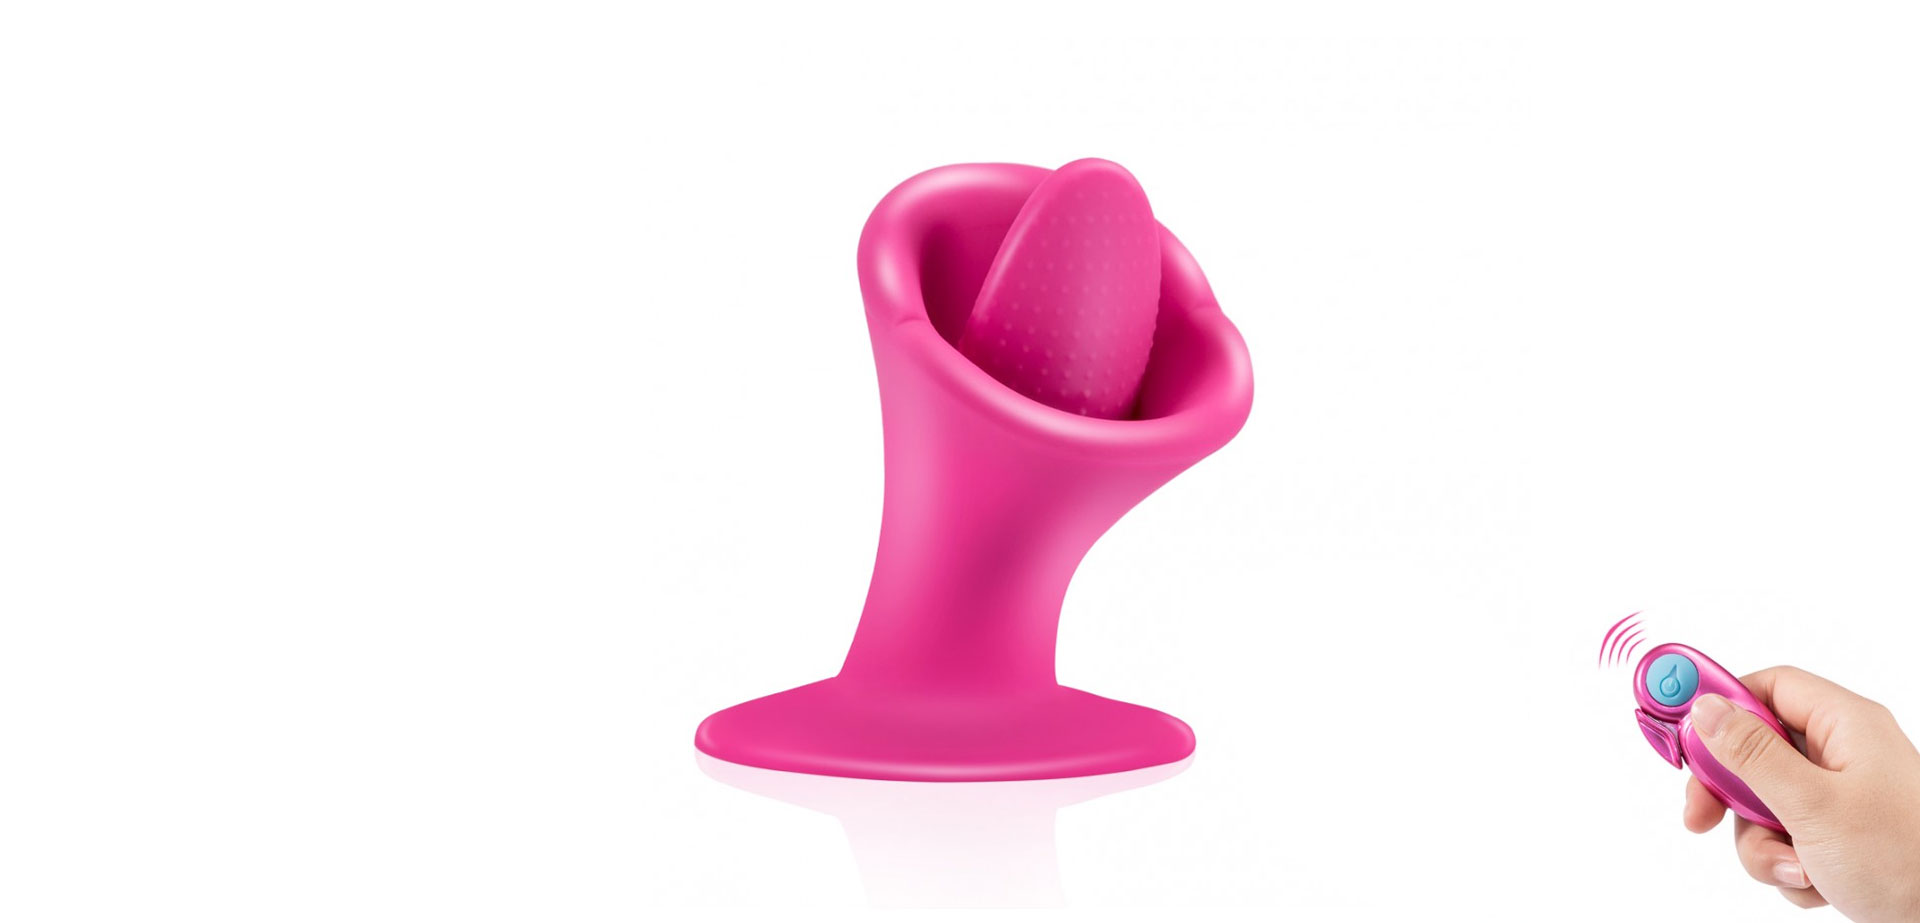 Oral sex clitoris tongue vibrator.